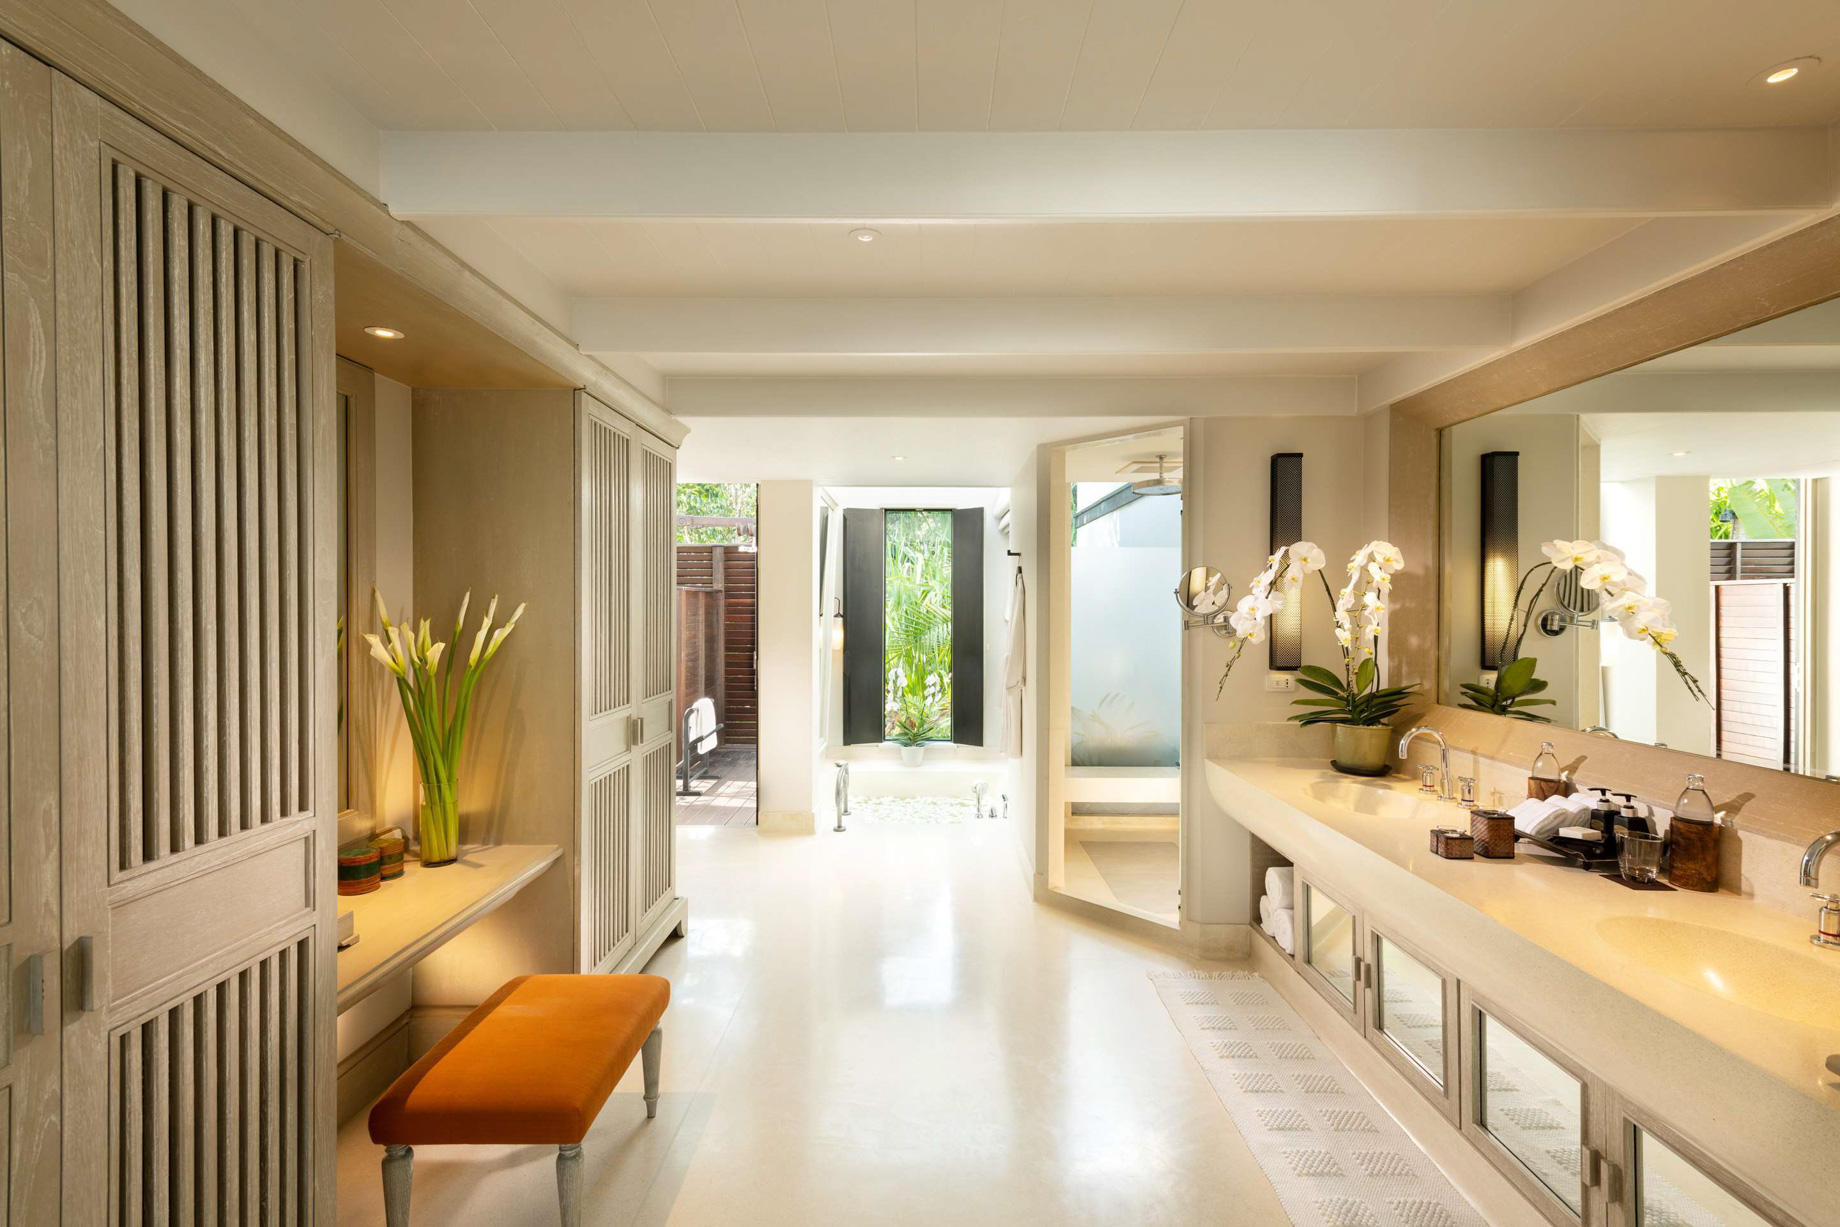 Anantara Mai Khao Phuket Villas Resort – Thailand – Villa Bathroom